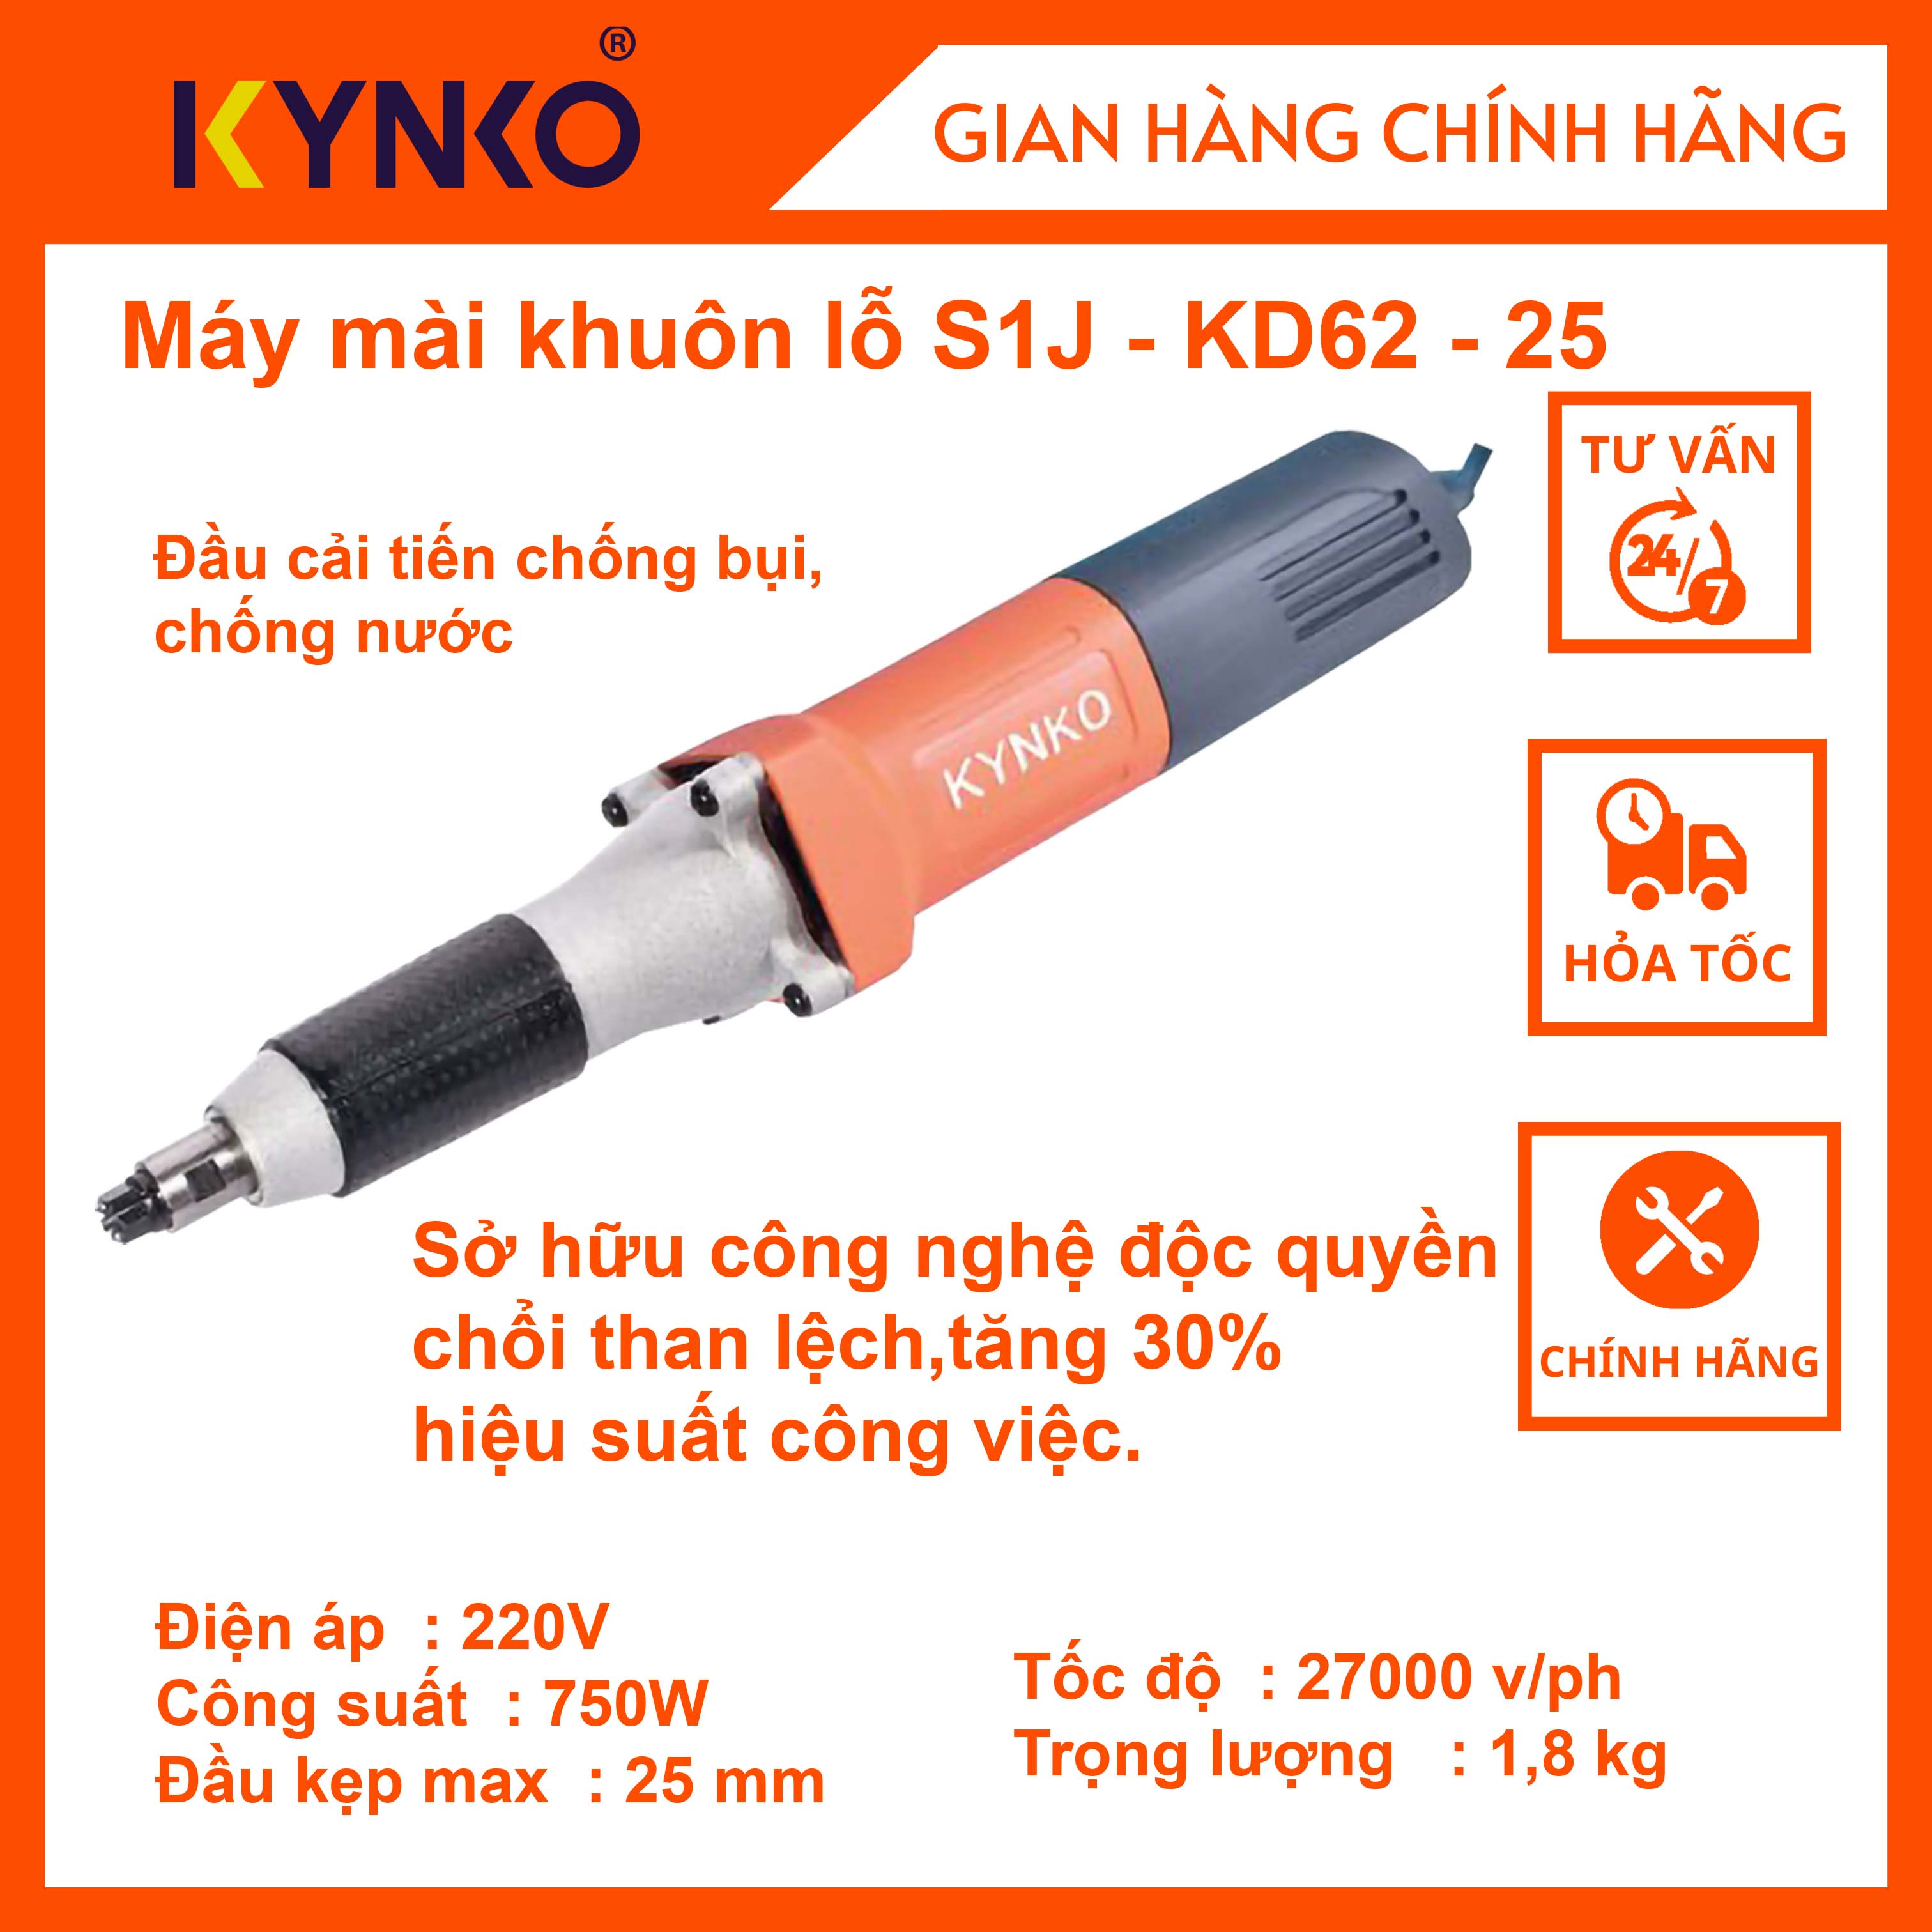 Máy mài khuôn lỗ cầm tay chính hãng Kynko S1J-KD62-25 Chống bụi, chống nước #6623 giá tốt